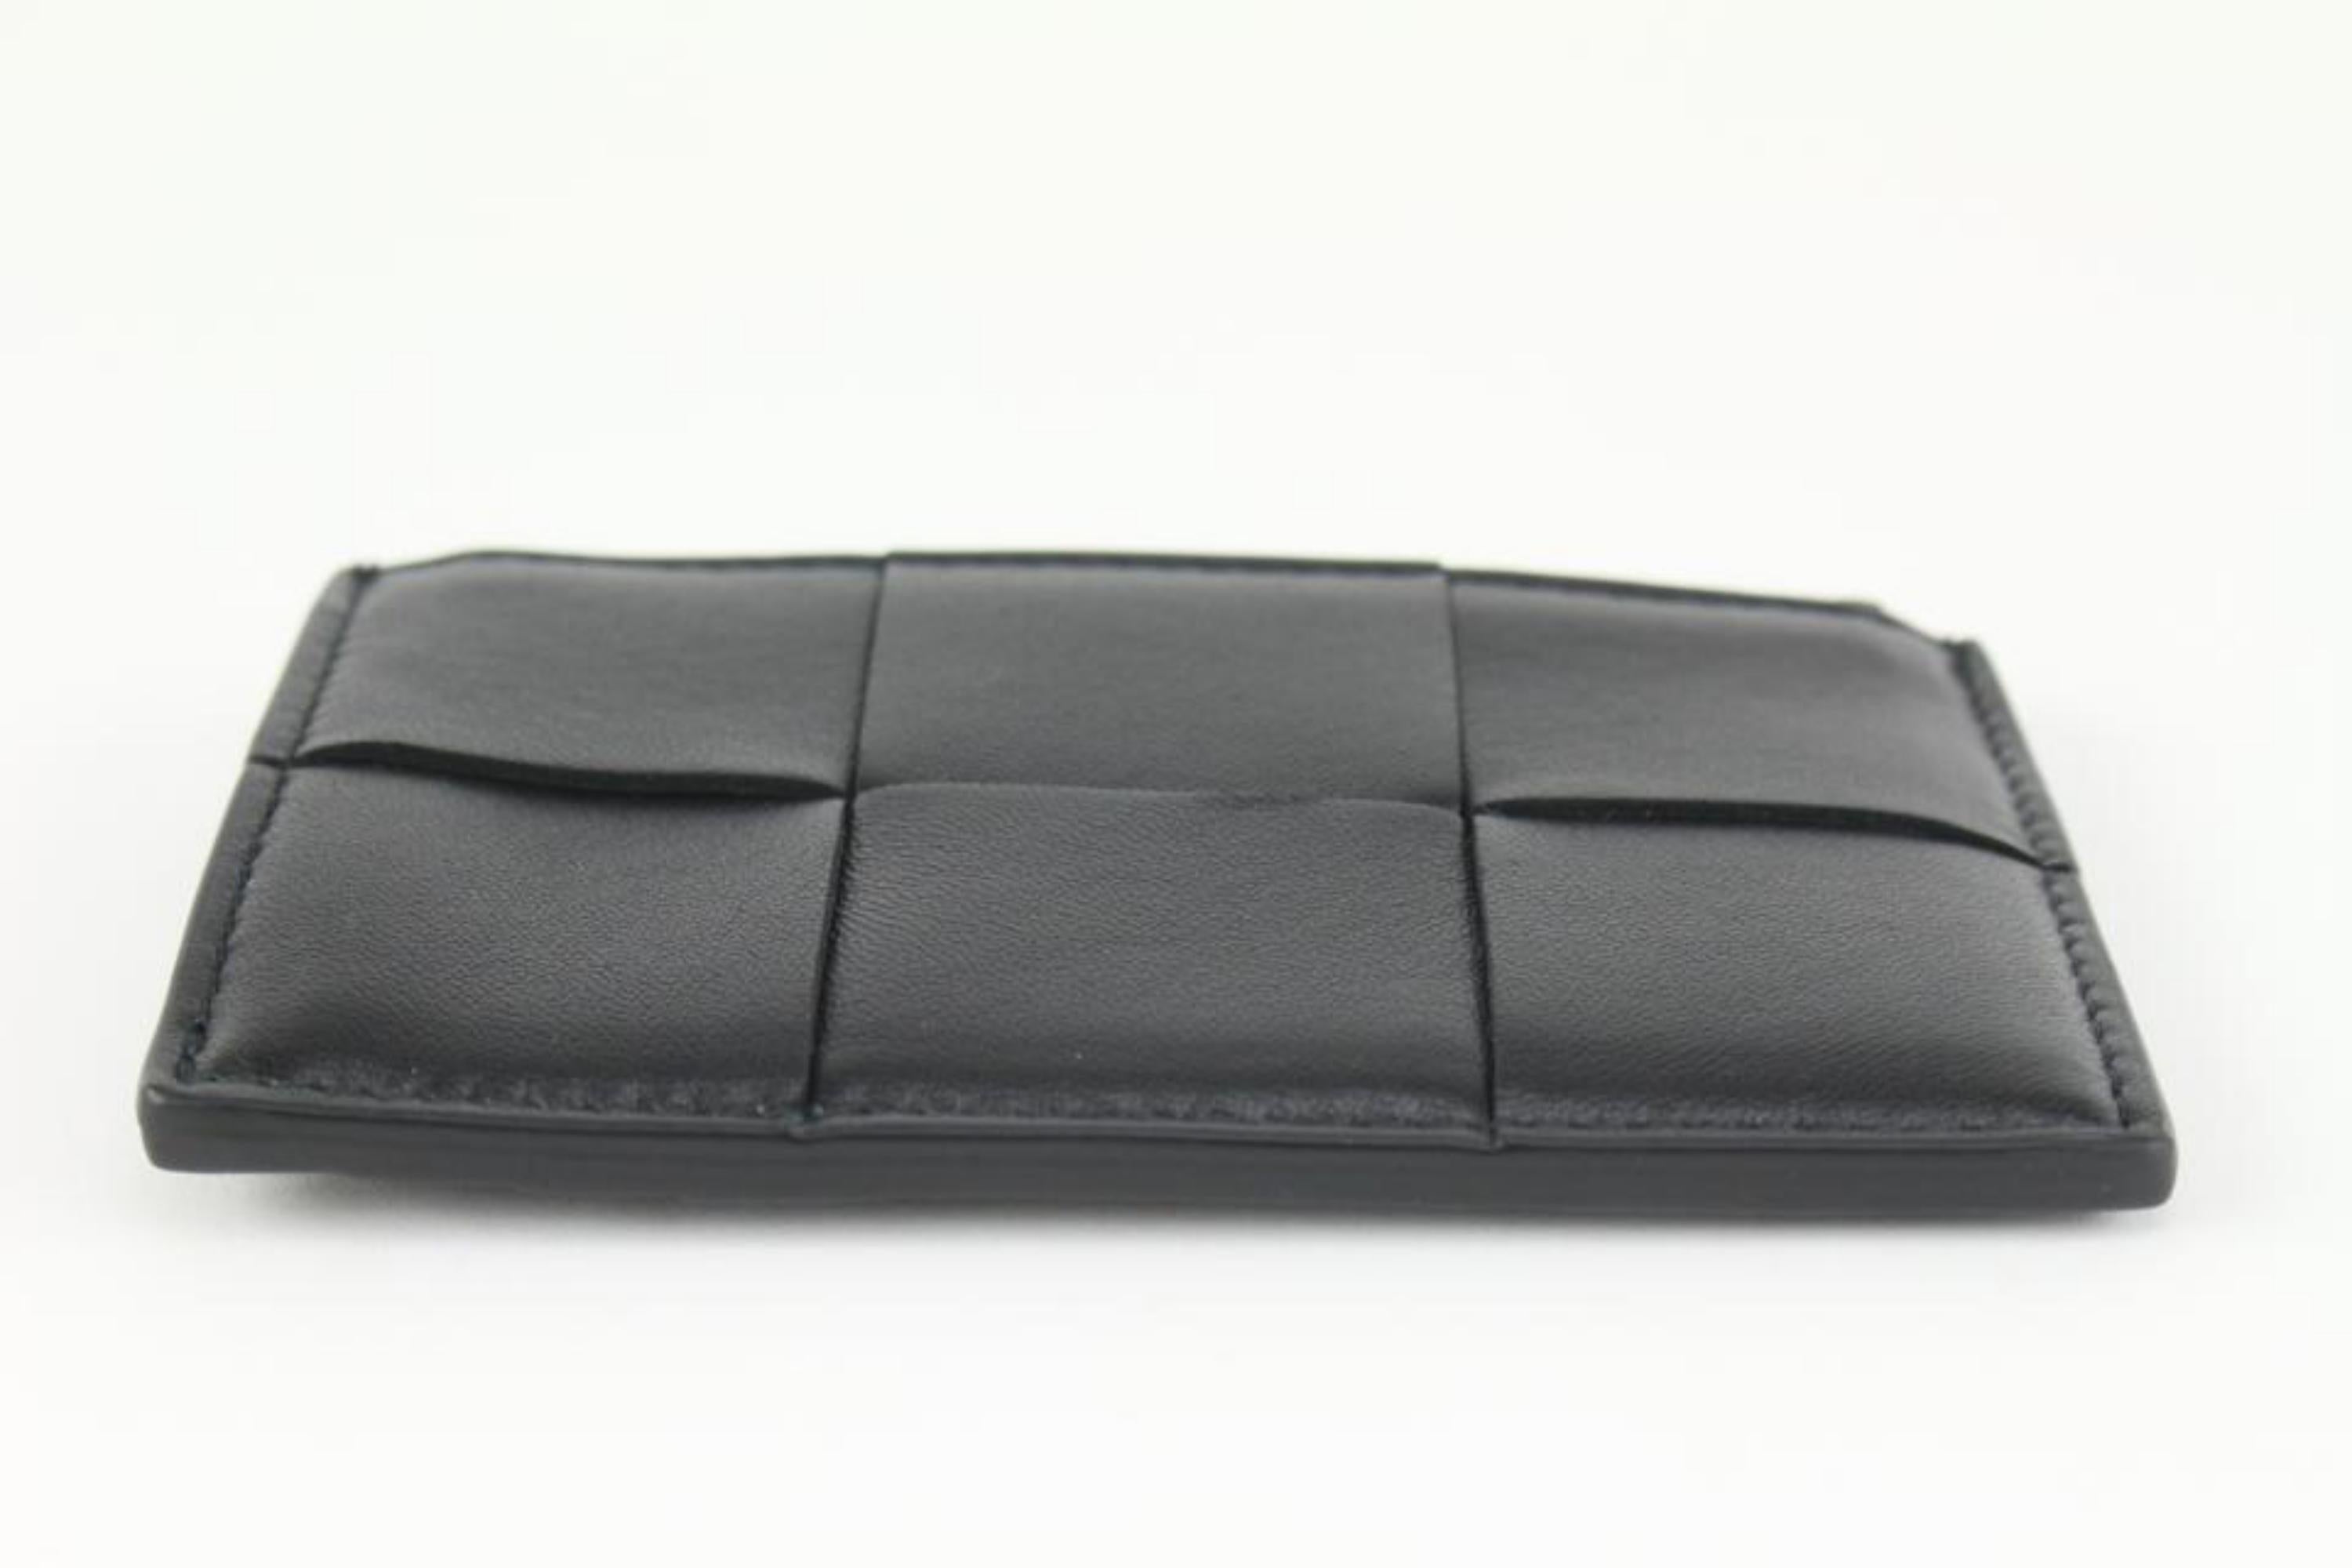 Bottega Veneta Black Intrecciato Leather Zipped Card Holder 1123bv34 For Sale 4